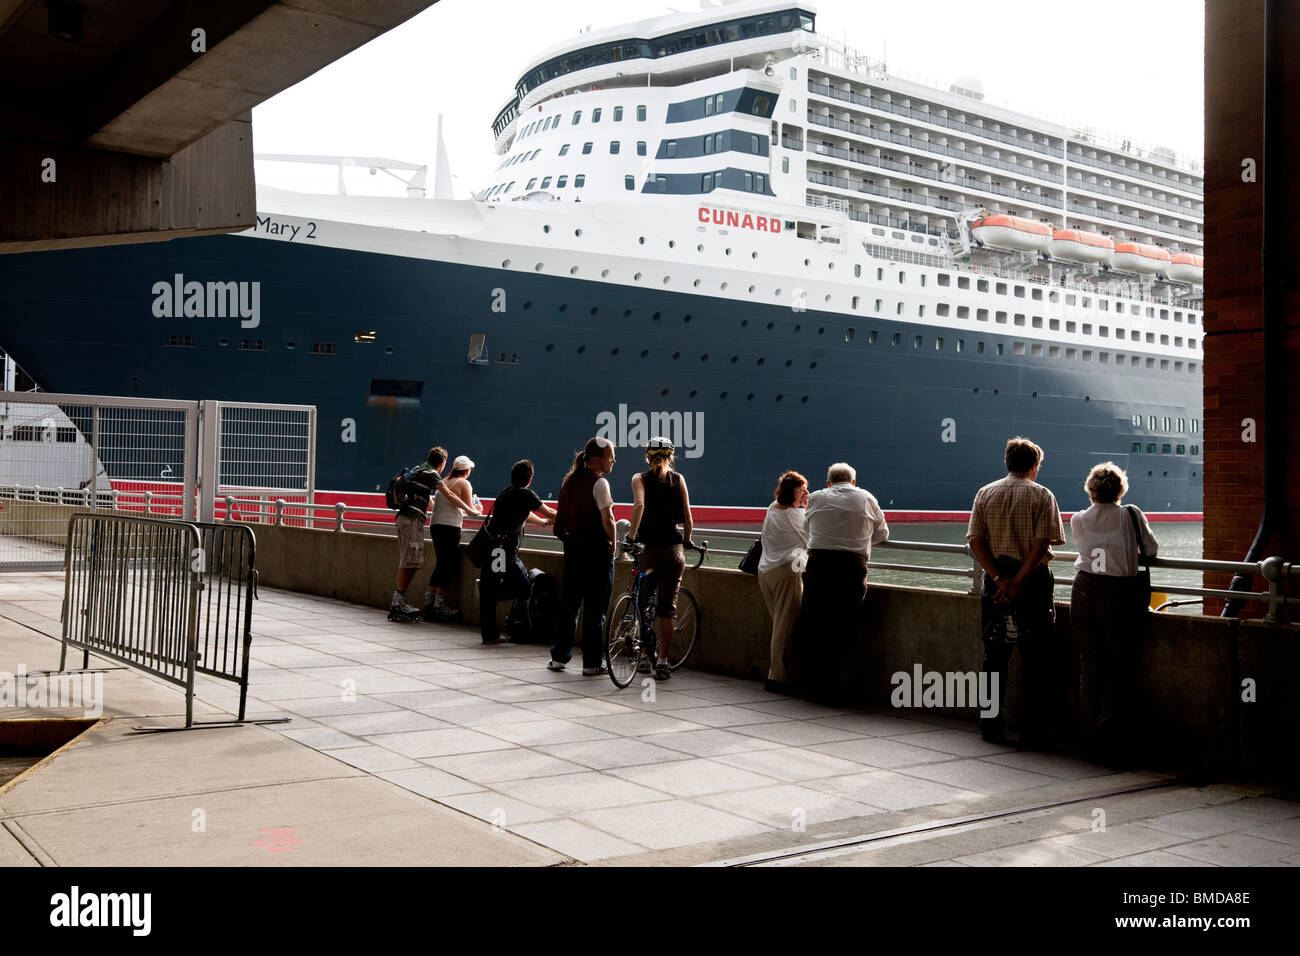 Pochi i passanti da pausa a bordo del New York waterfront a contemplare le incredibili dimensioni della nave ammiraglia Cunard Queen Mary 2 Foto Stock